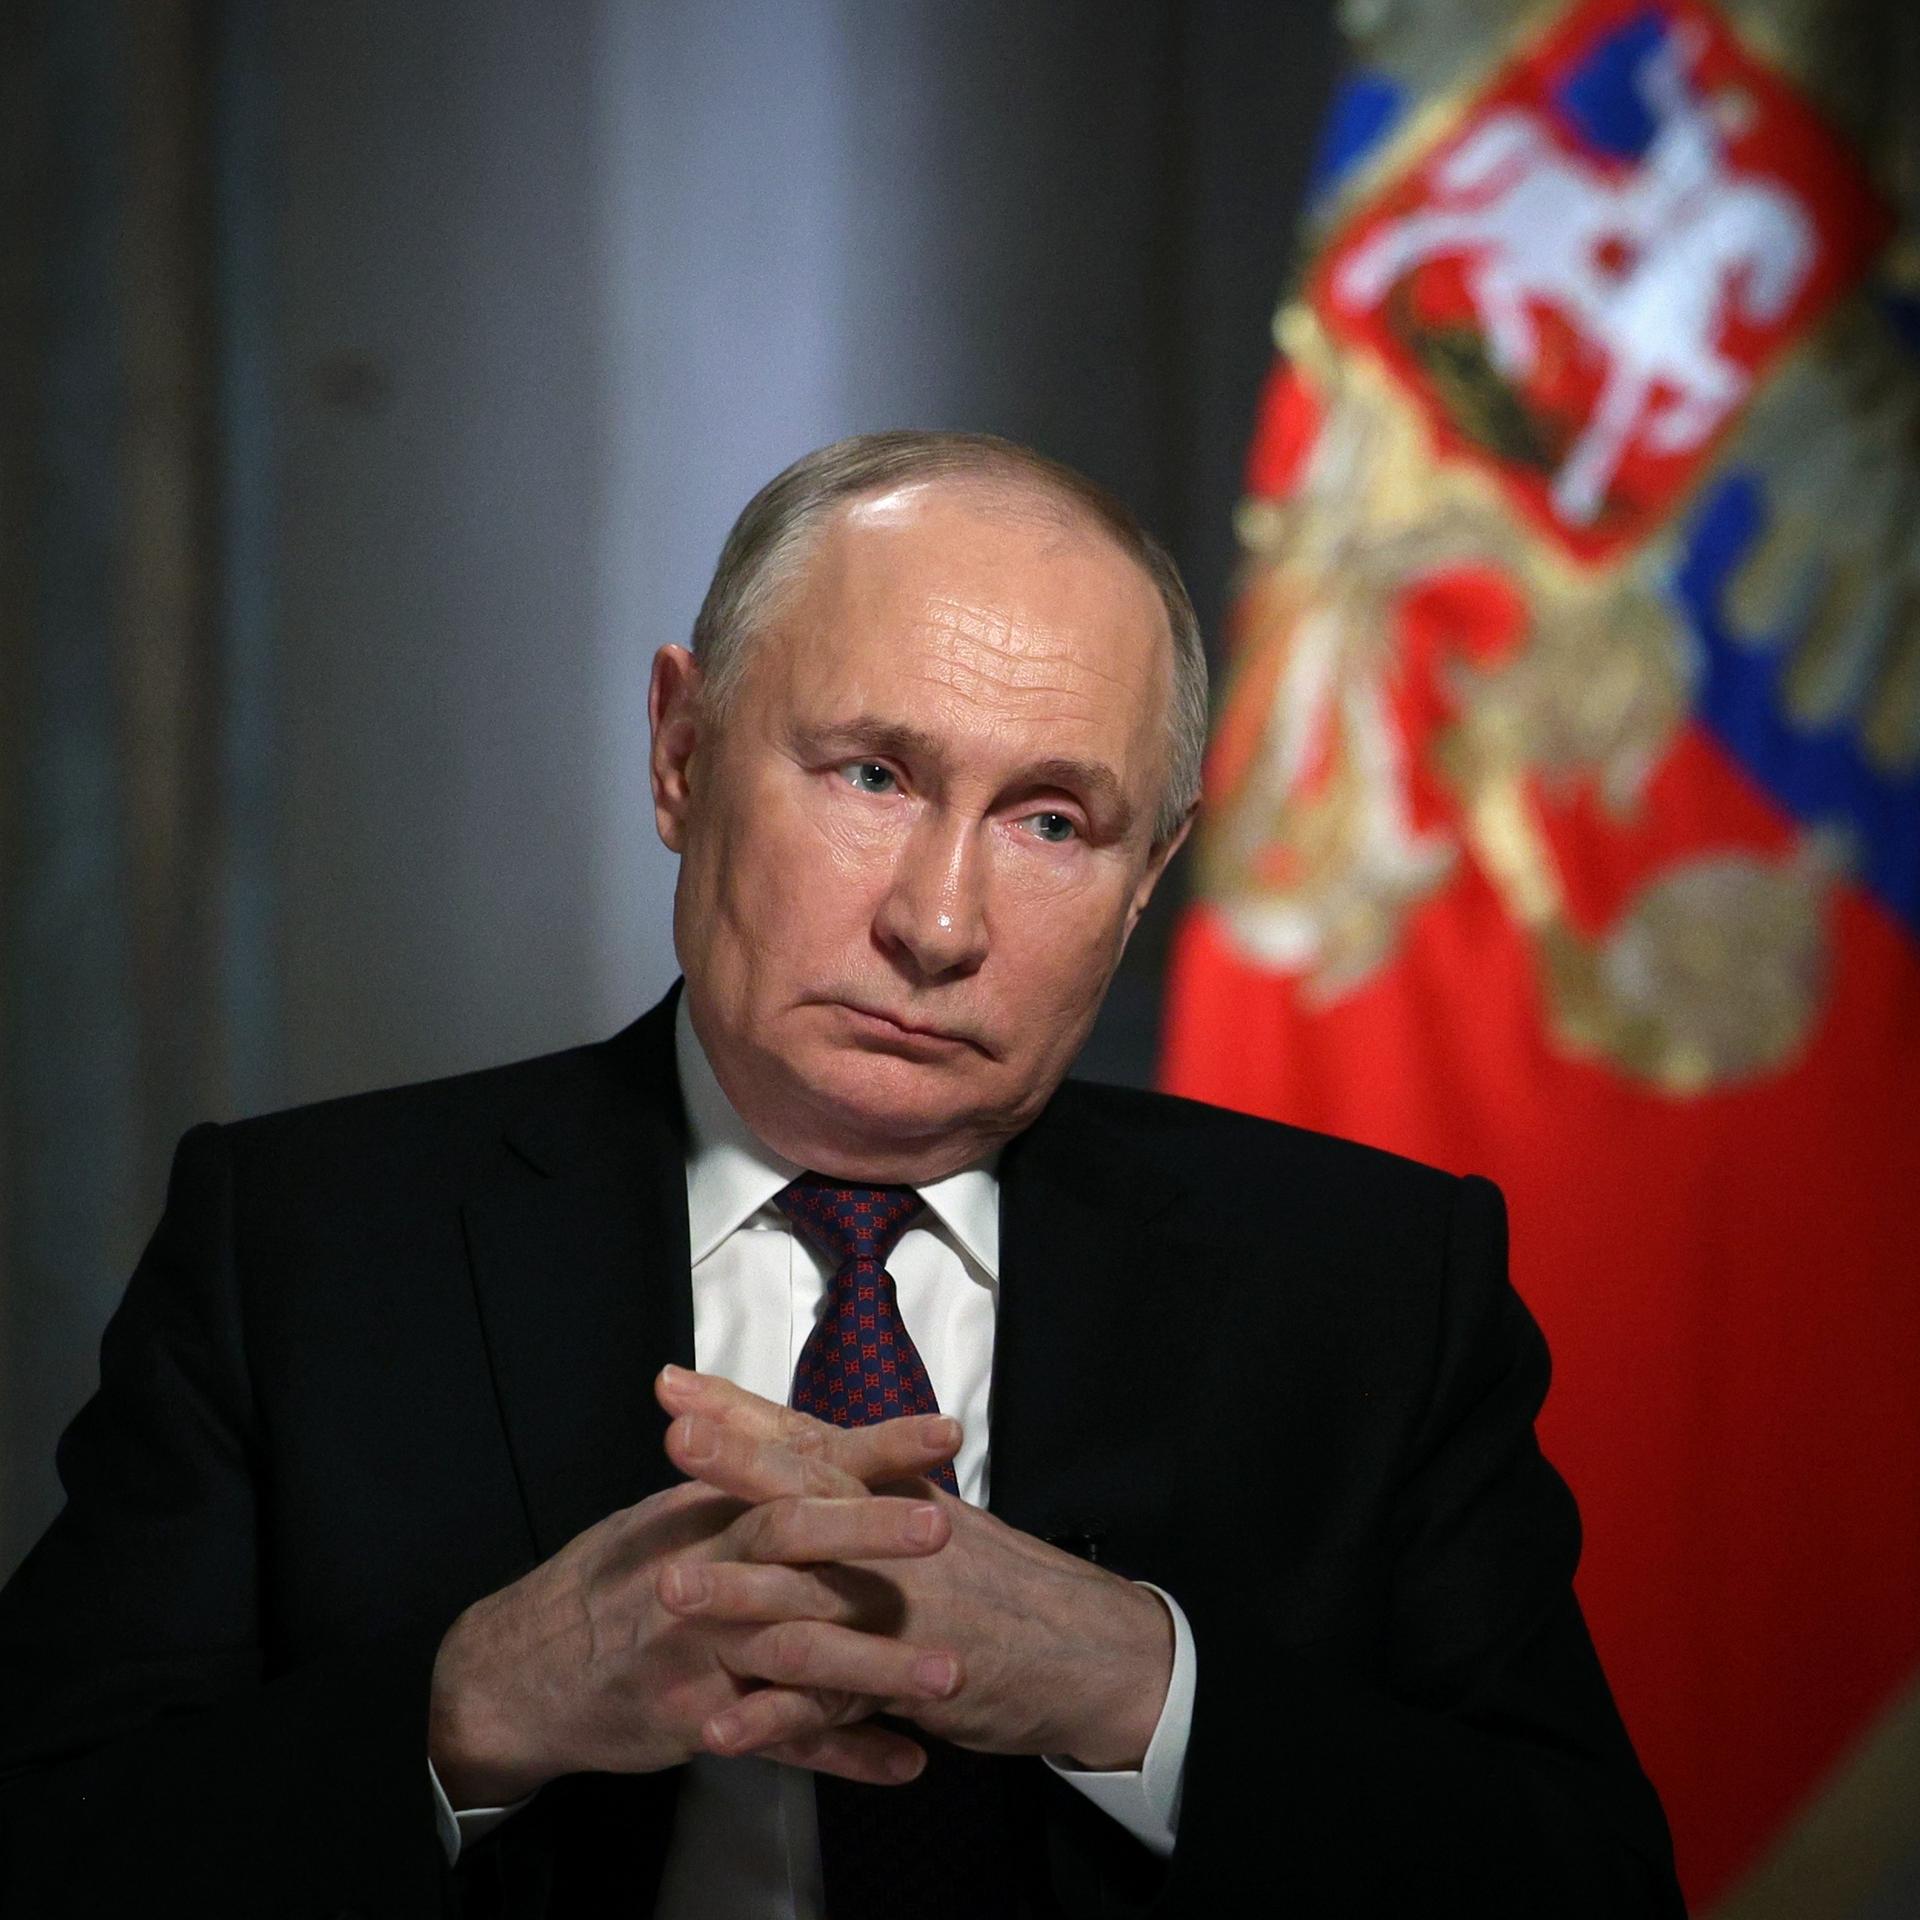 Wahlen in Russland - Ein autoritäres System sendet Signale